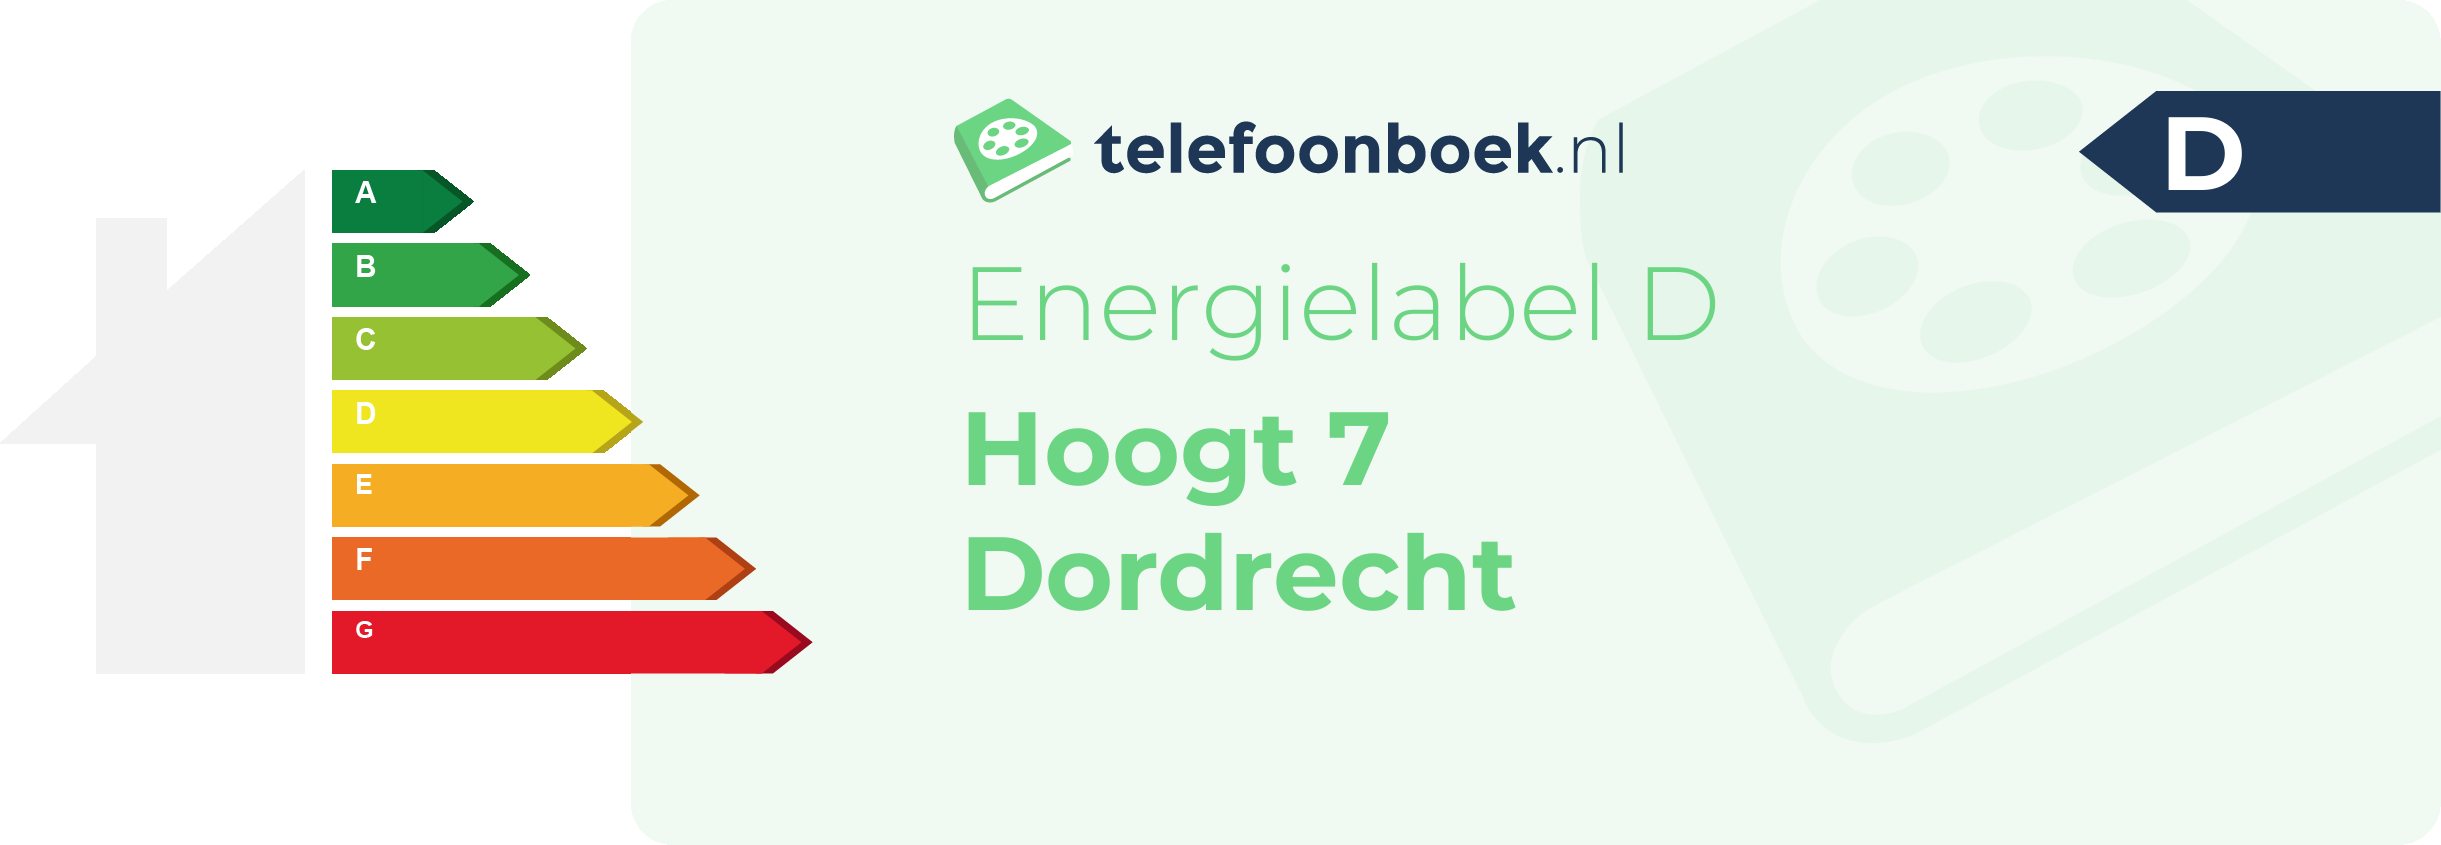 Energielabel Hoogt 7 Dordrecht